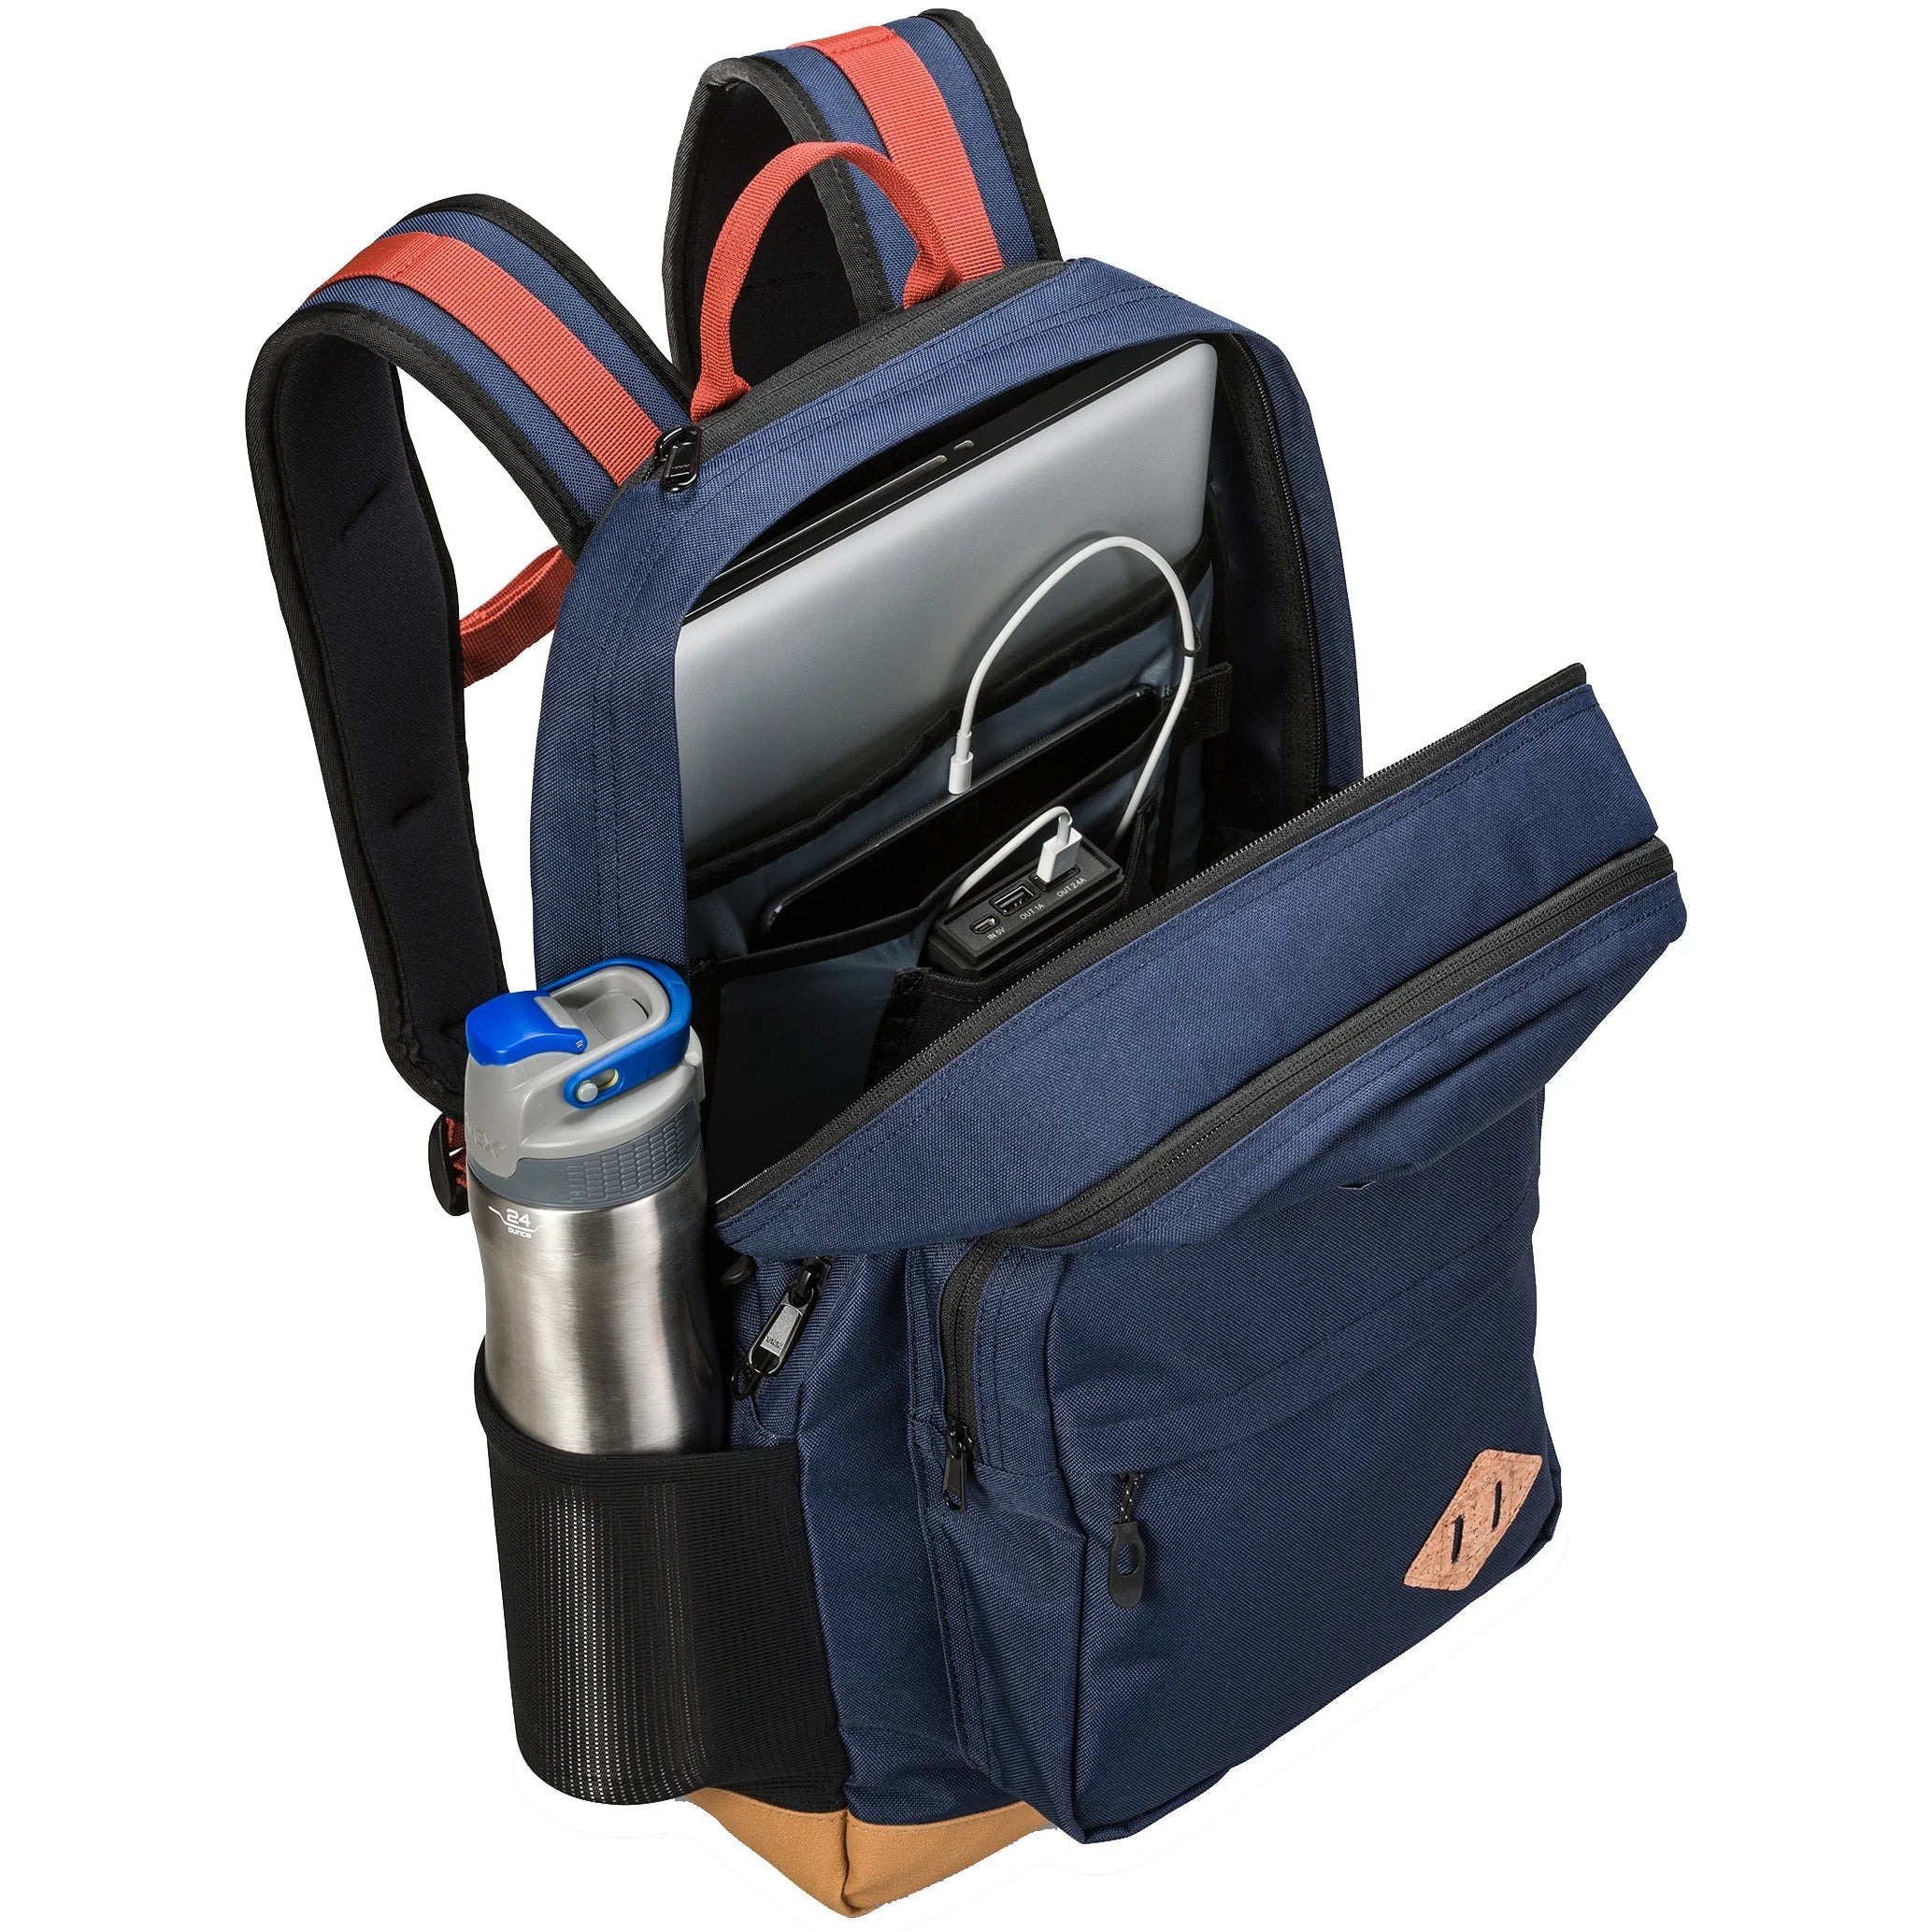 Dakine Packs & Bags 365 Pack DLX Backpack 47 cm - Black